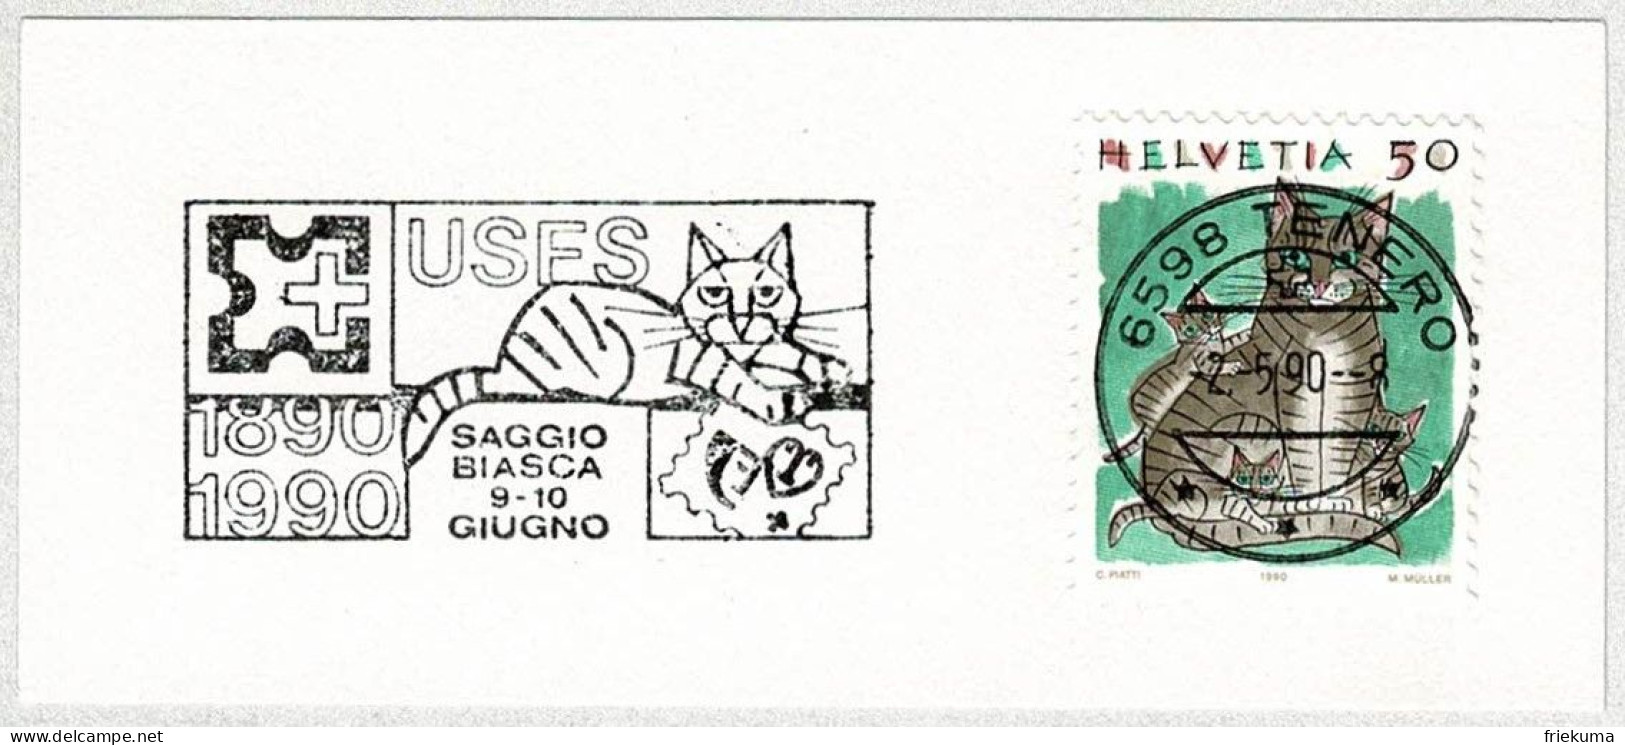 Schweiz / Helvetia 1990, Flaggenstempel USFS Tenero, Katze / Chat / Cat - Domestic Cats